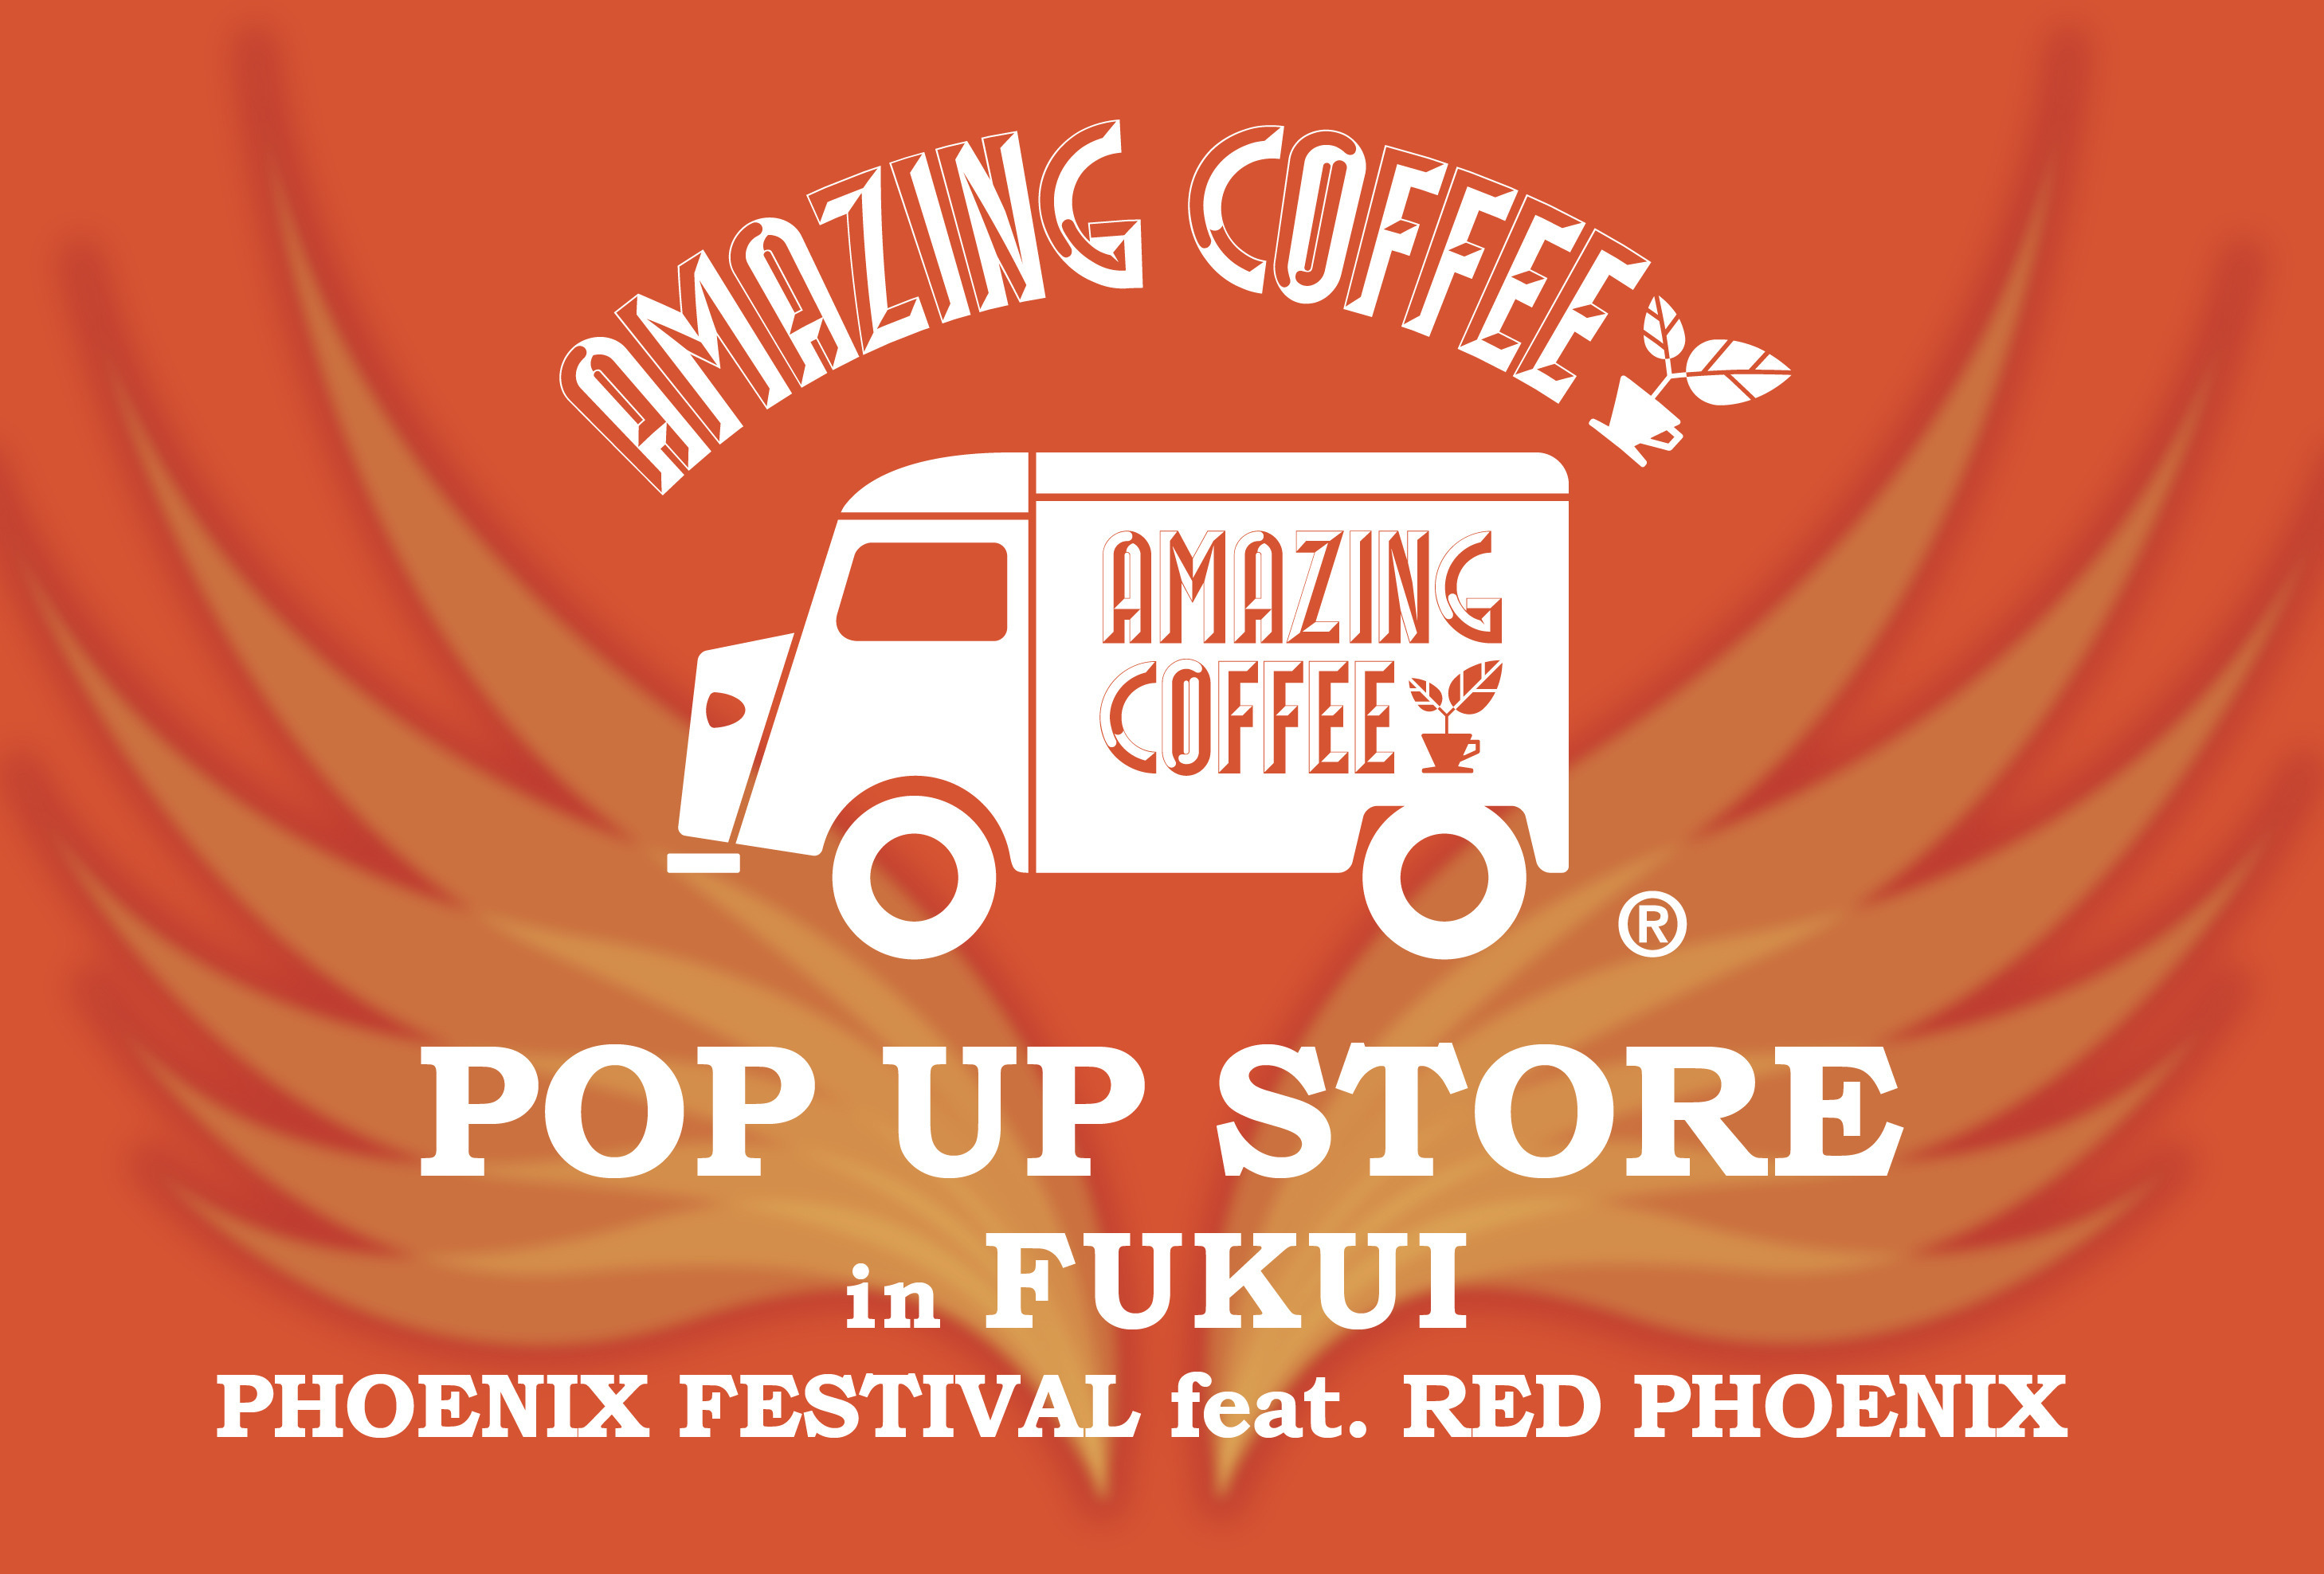 【8月26日(金)よりSTART!!】☕AMAZING COFFEE POPUP STORE in FUKUI PHOENIX FESTIVAL feat. RED PHOENIX✨